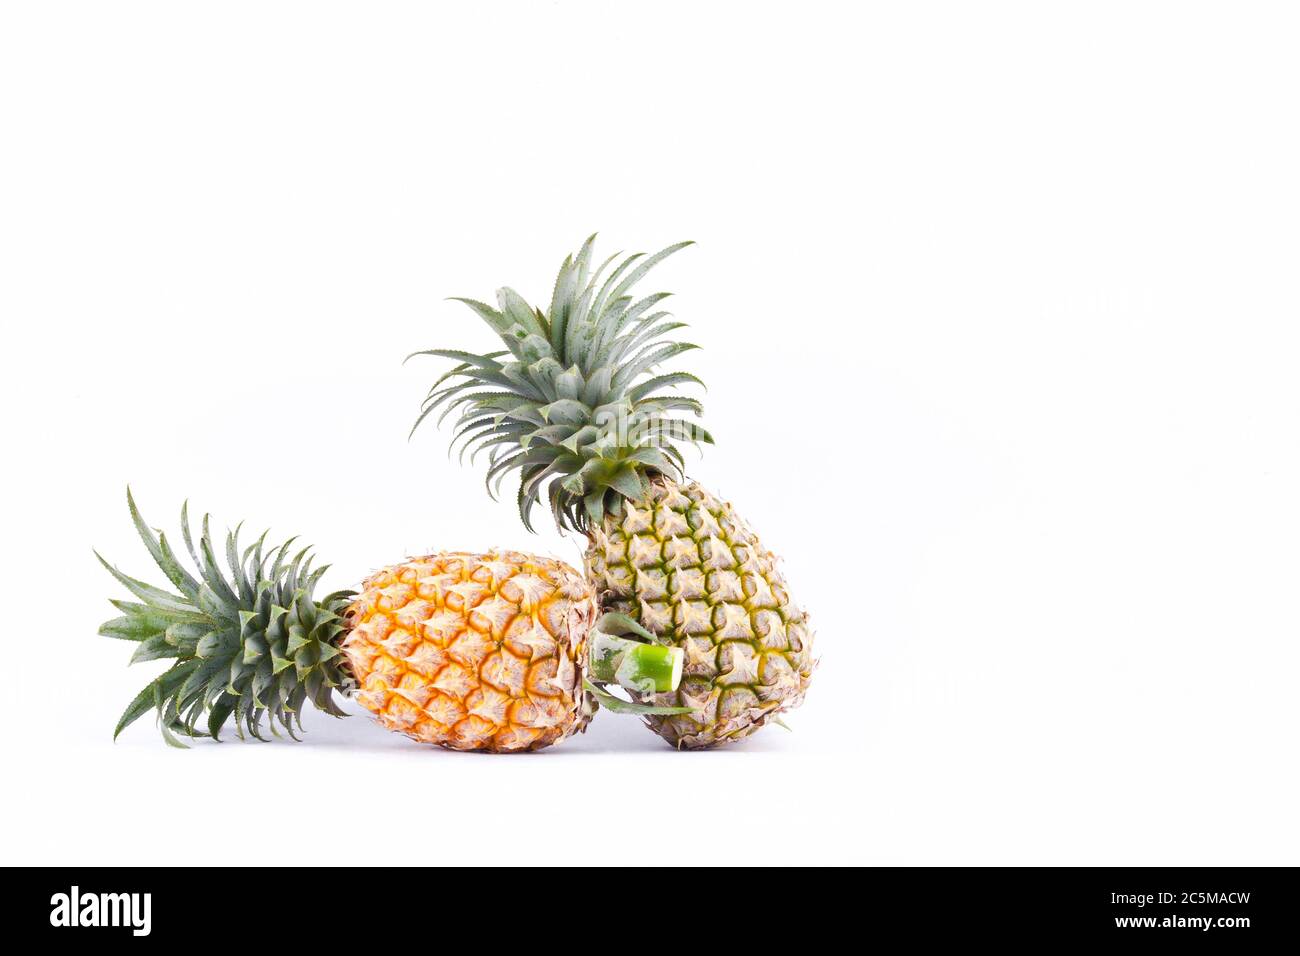 l'ananas mûr est un fruit tropical sur fond blanc. la nourriture saine aux fruits de l'ananas est isolée Banque D'Images